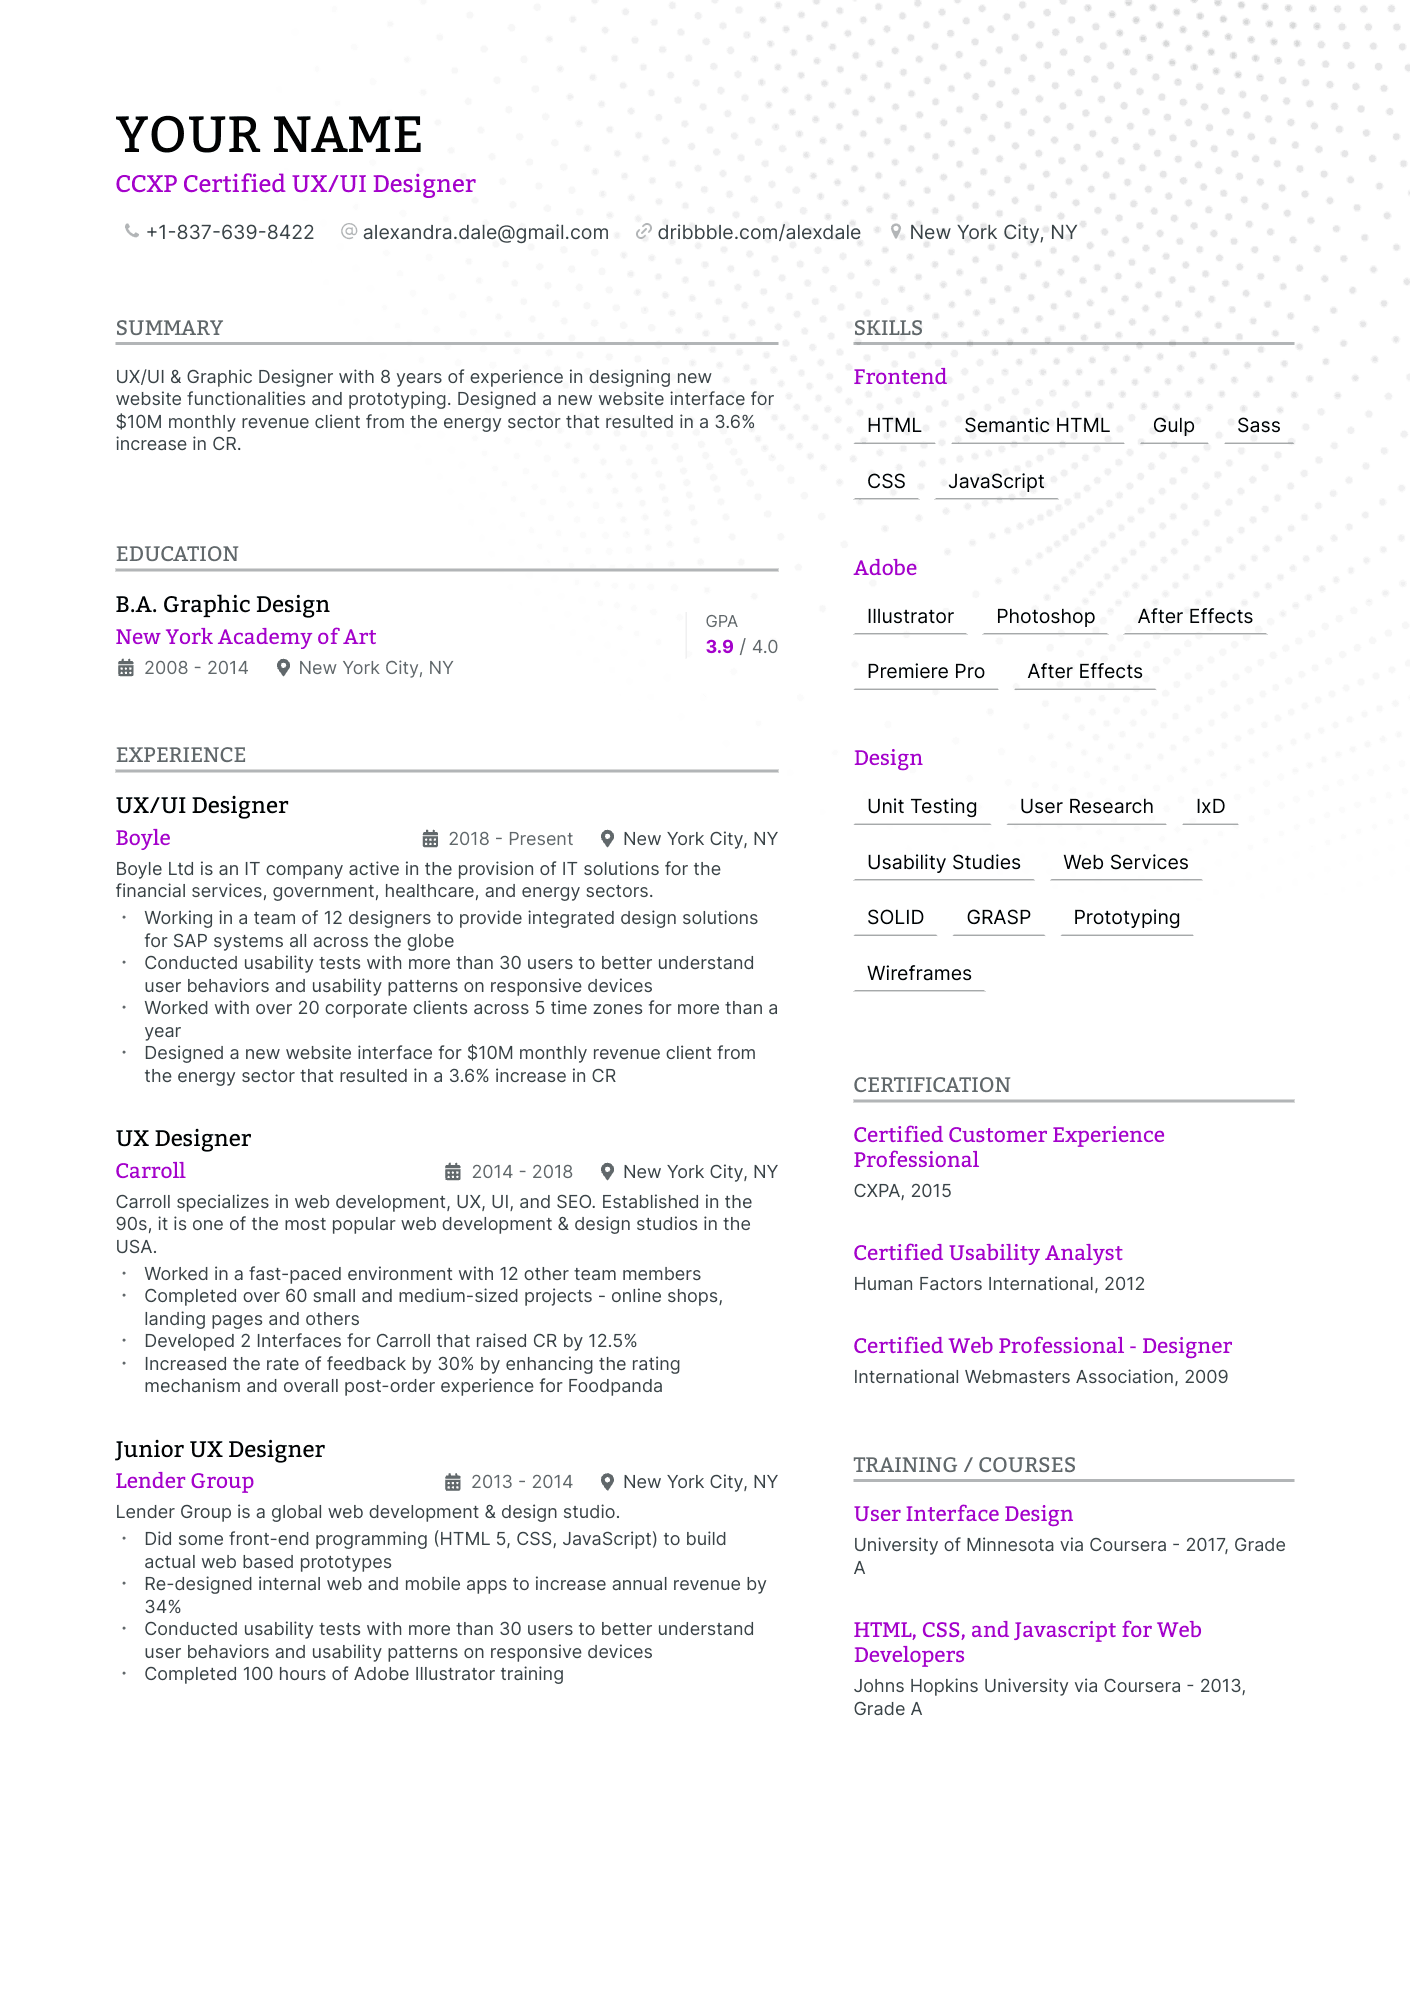 CCXP Certified UX/UI Designer resume example